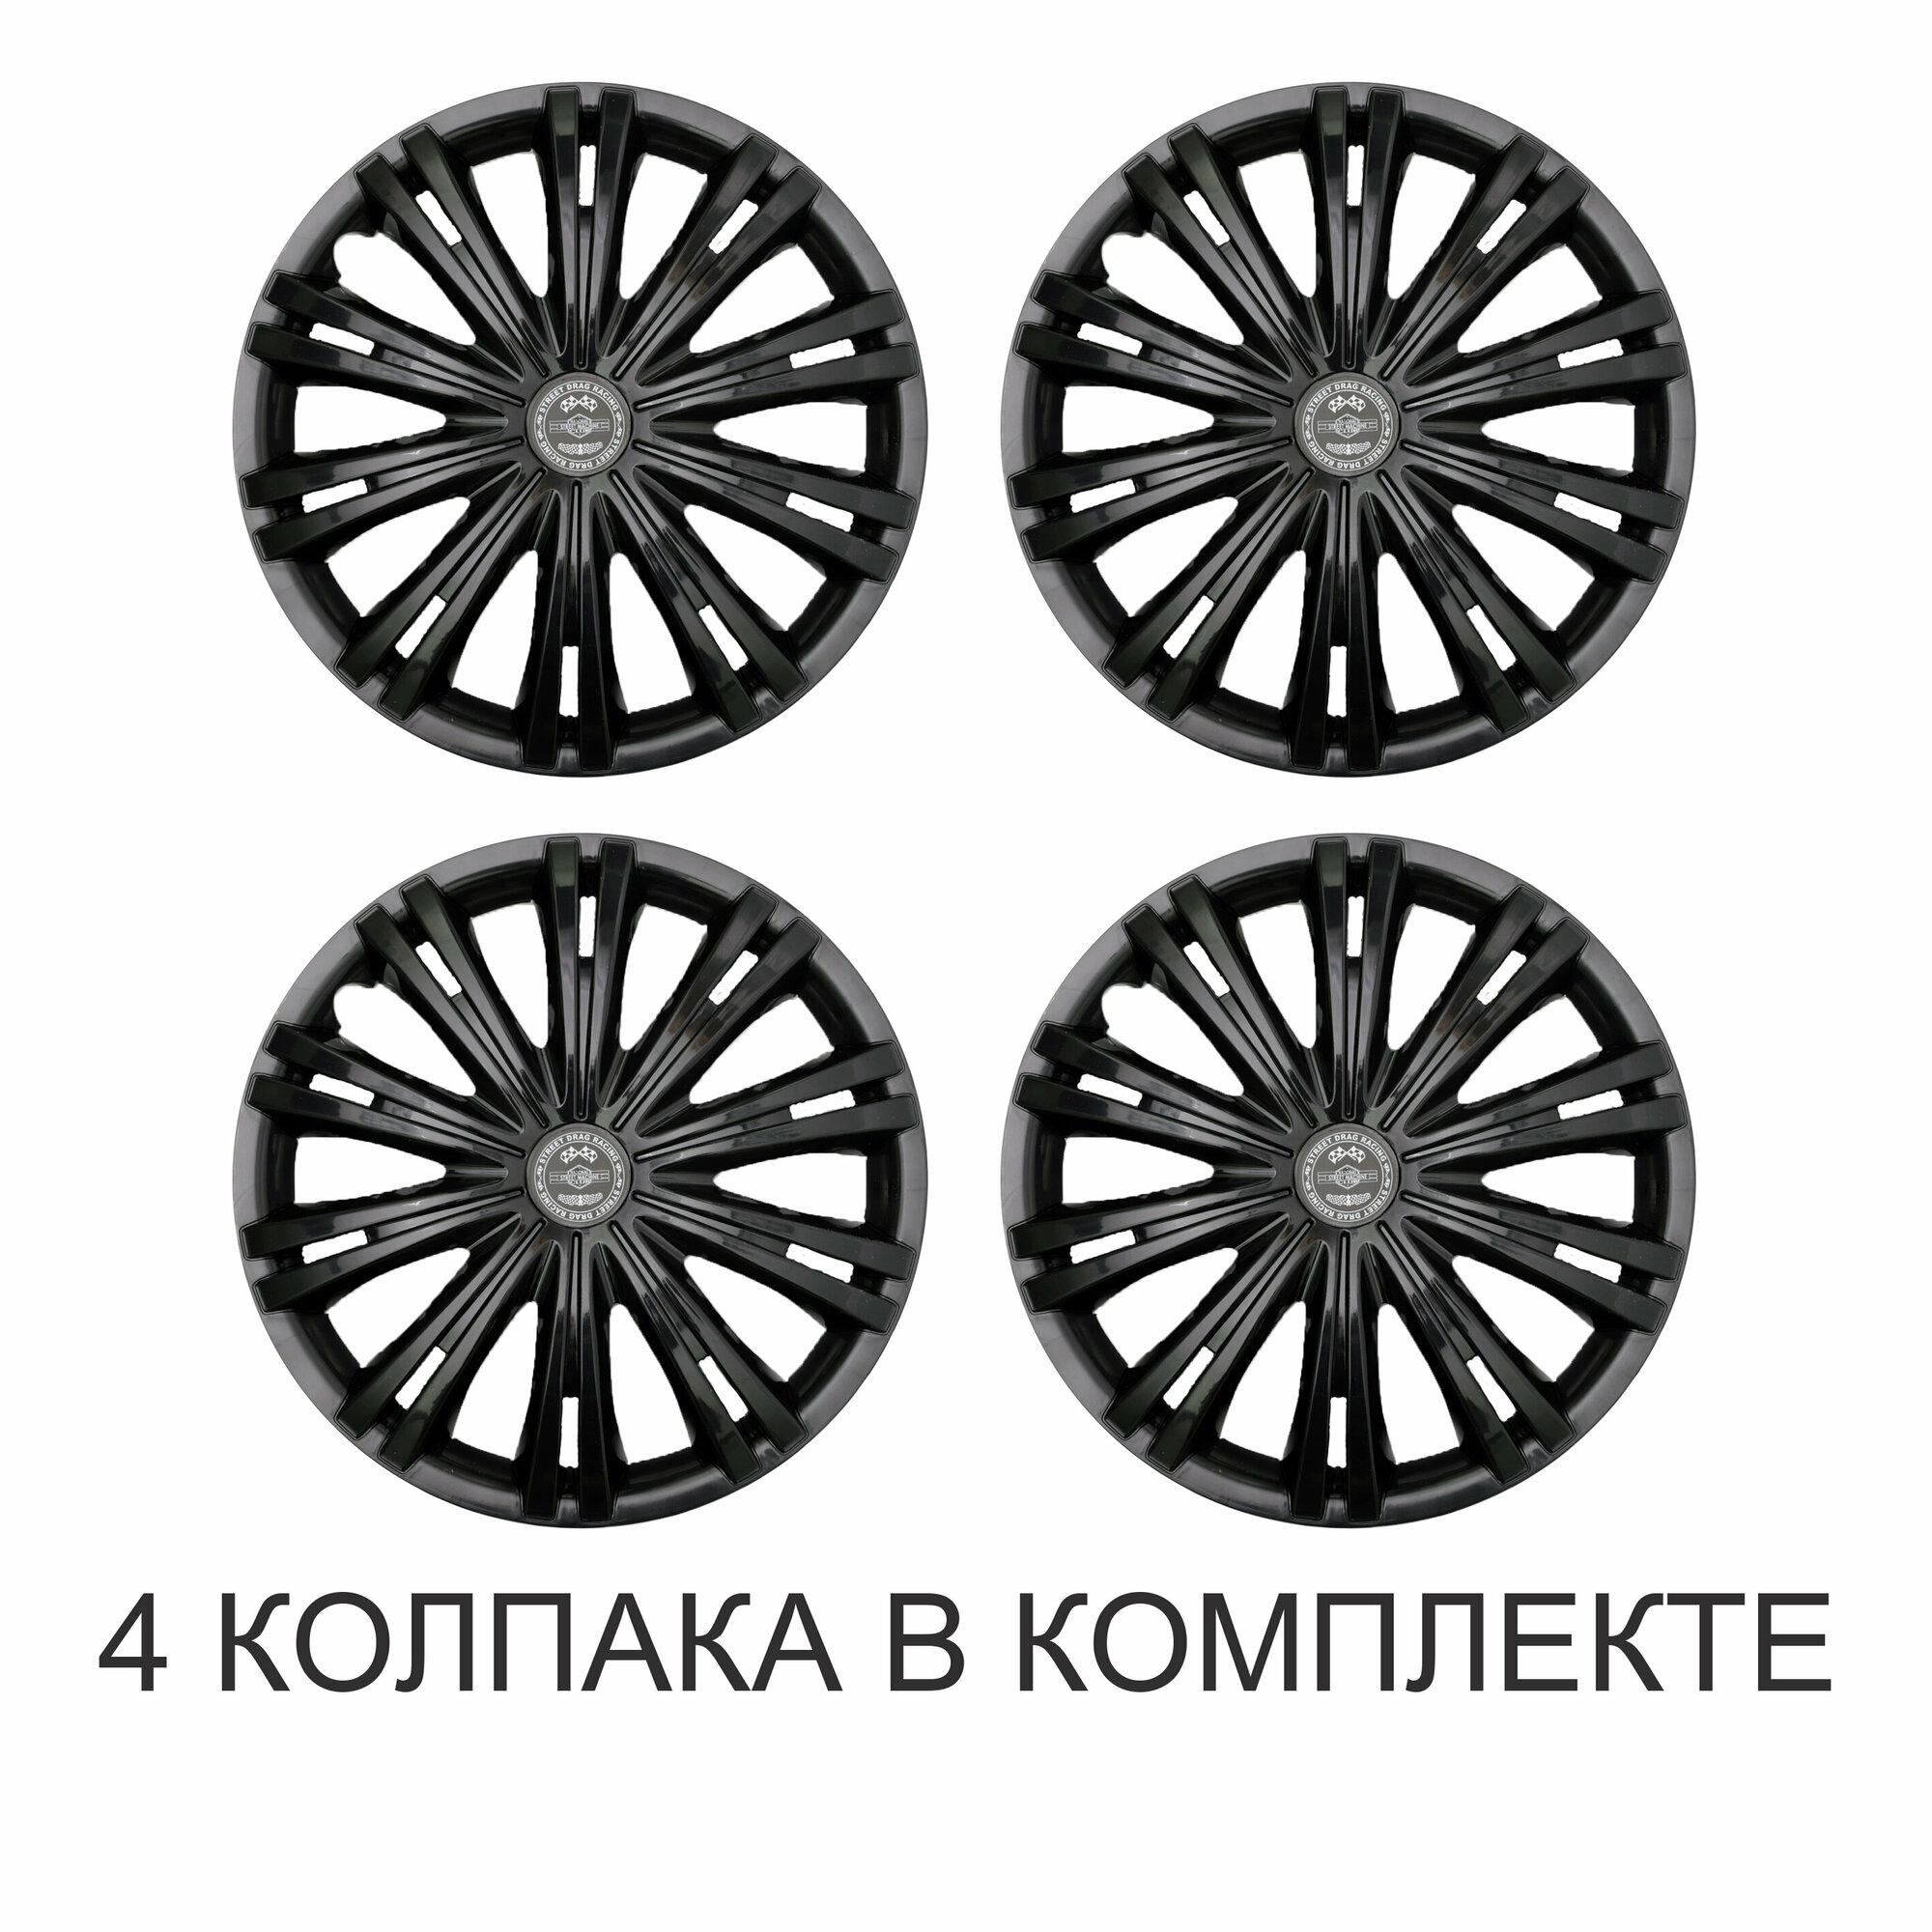 Колпаки R14 4 на колеса авто STAR Гига черная р14 на диски радиус 14 цвет черный black